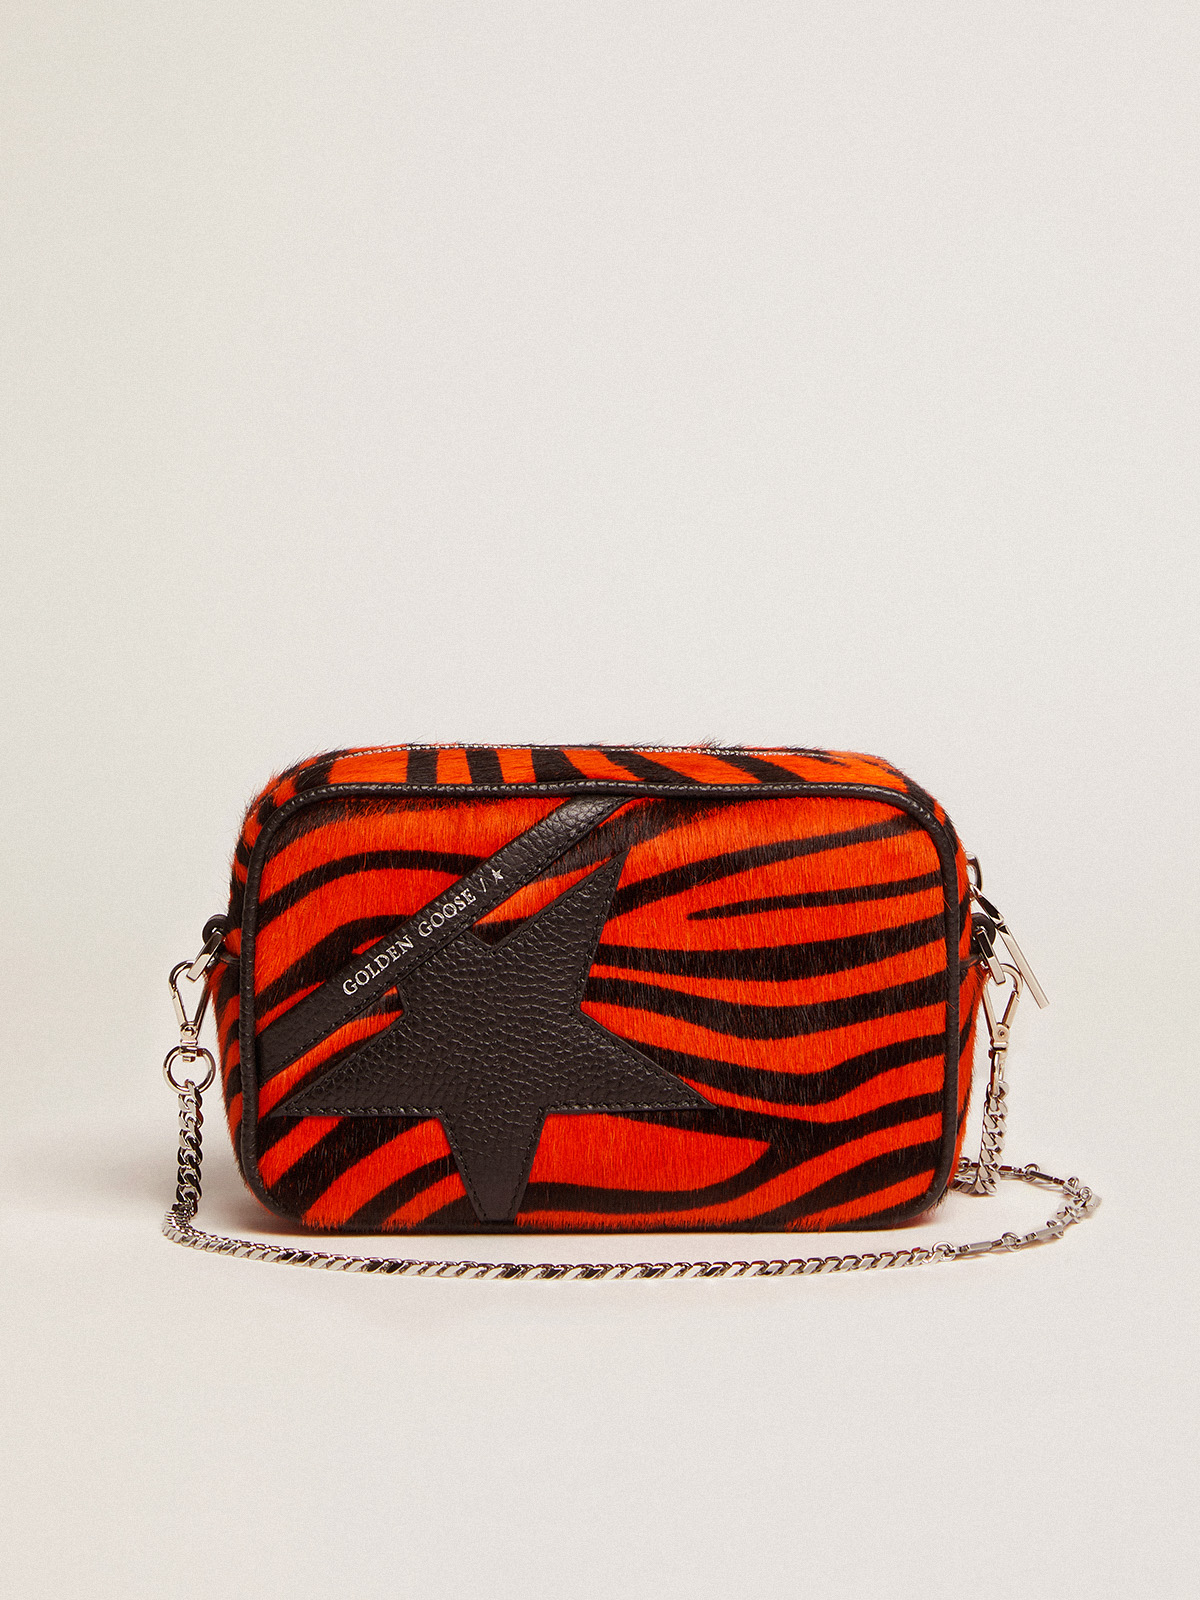 Mini Star Bag in orange tiger-print pony skin with leather star Goose